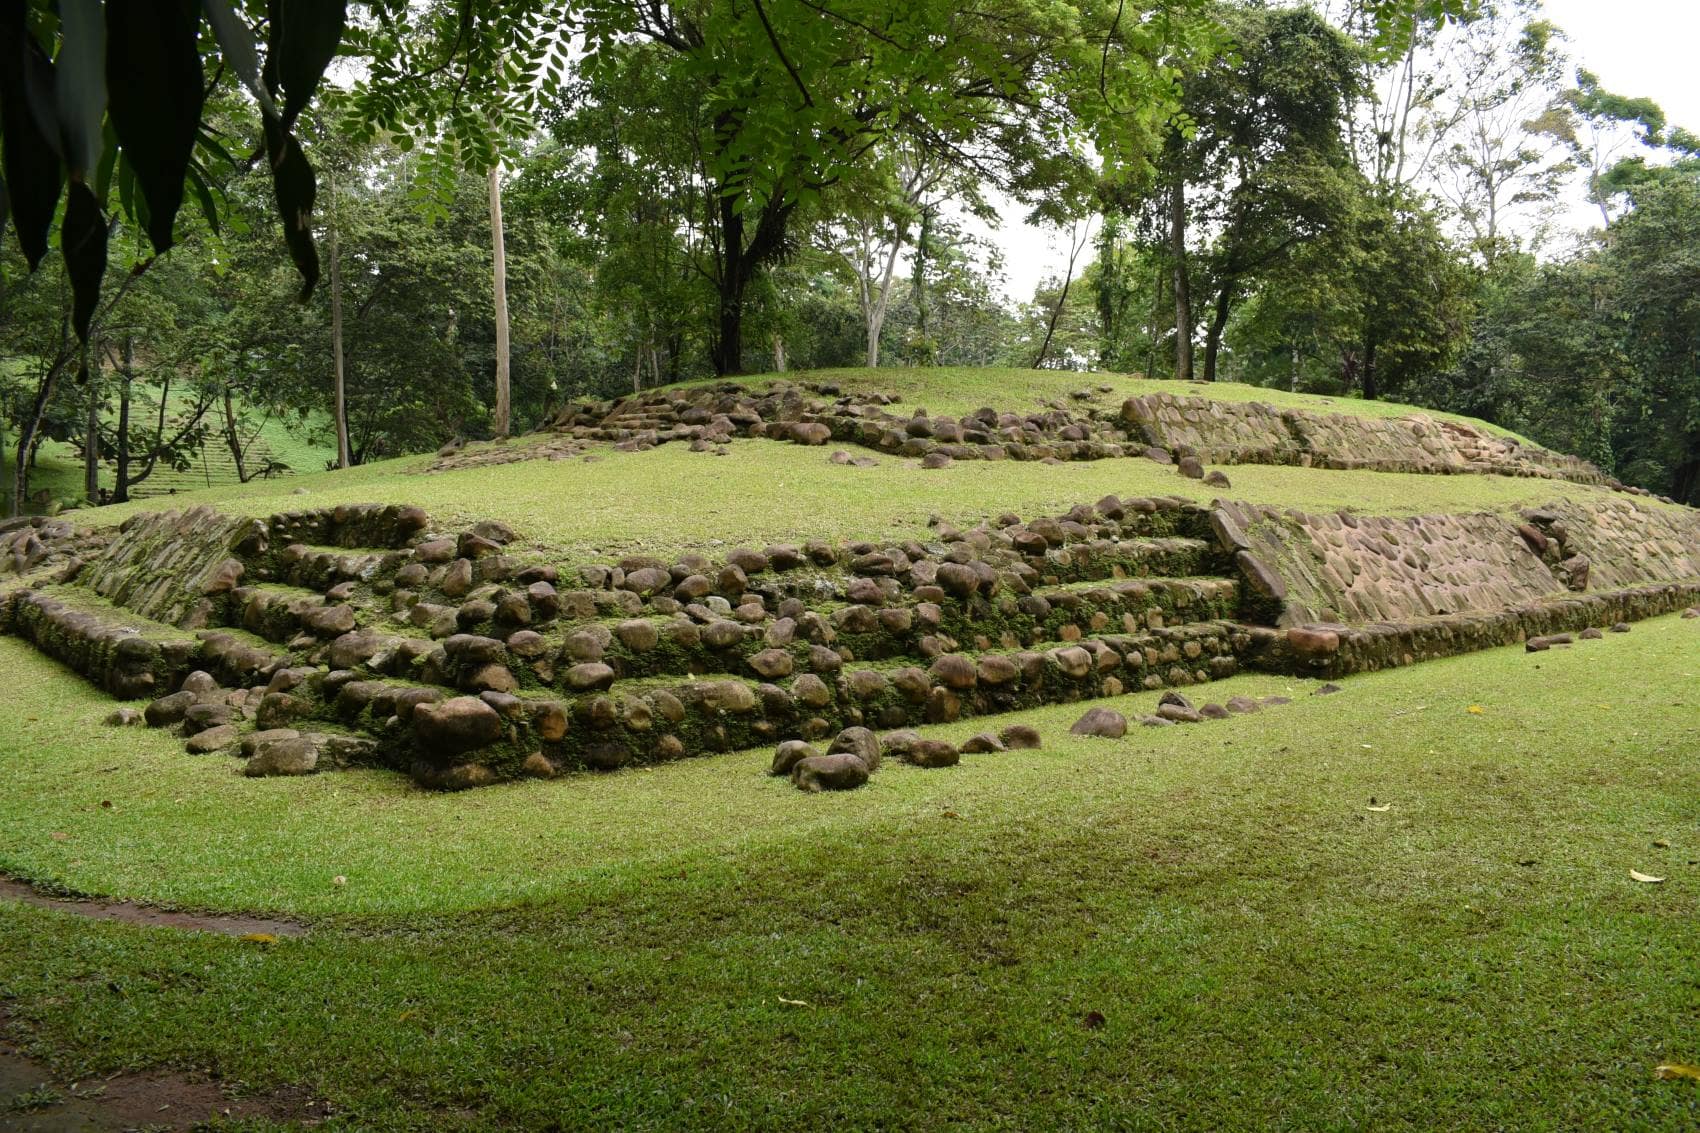 Maya-Stätte im National Archaeological Park Tak’alik Ab’aj, Guatemala 